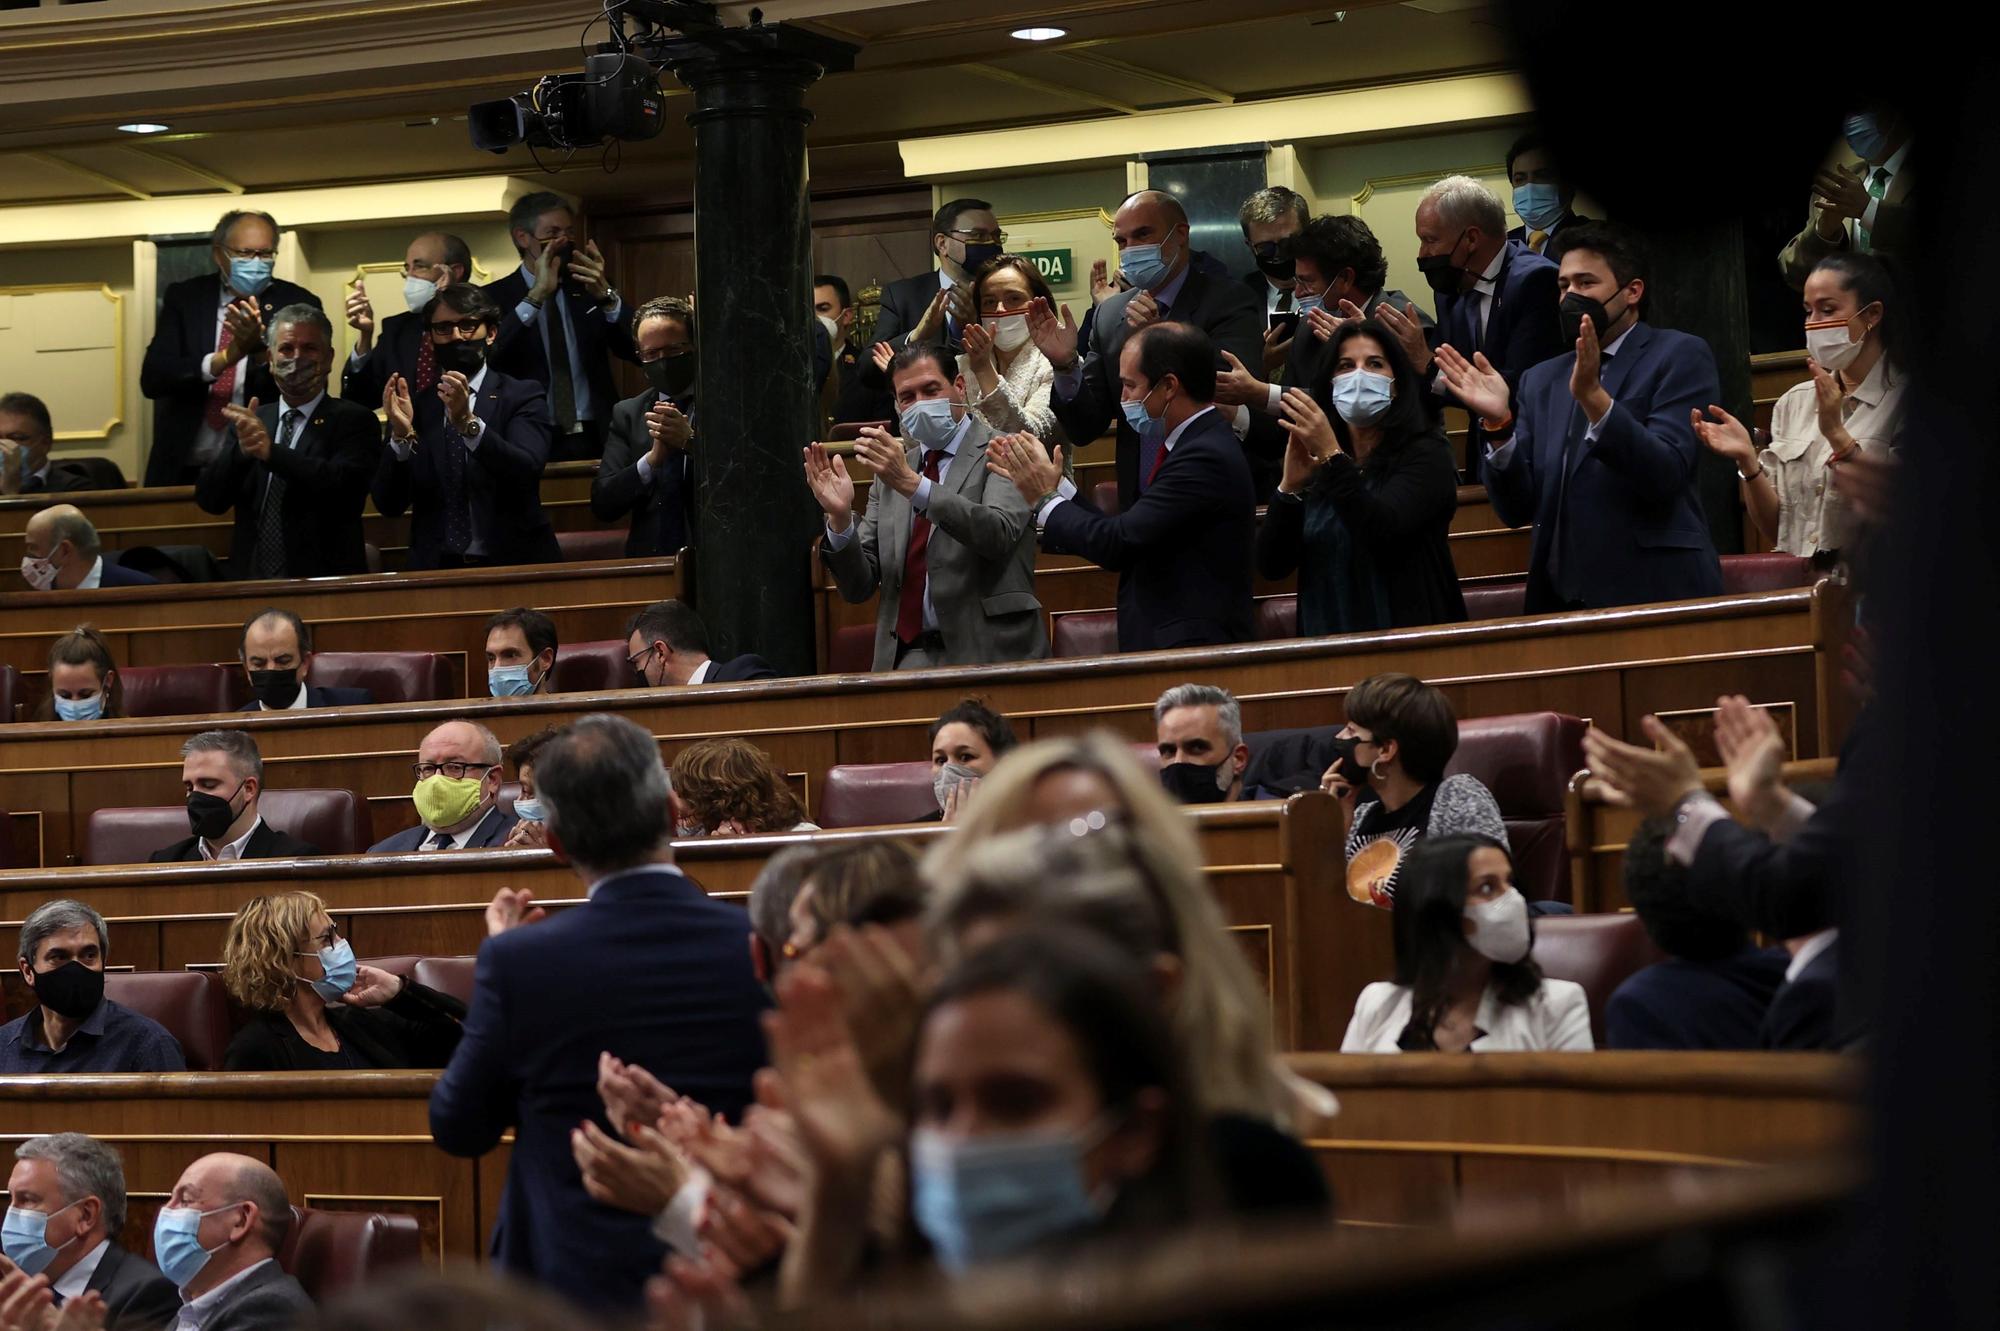 Los diputados del PP aplauden al principio tras decir la presidenta de la cámara, Meritxell Batet, que quedaba derogada la ley de la reforma laboral, aunque finalmente el pleno del Congreso de los Diputados votó a favor de la convalidación de la misma, este jueves en Madrid.